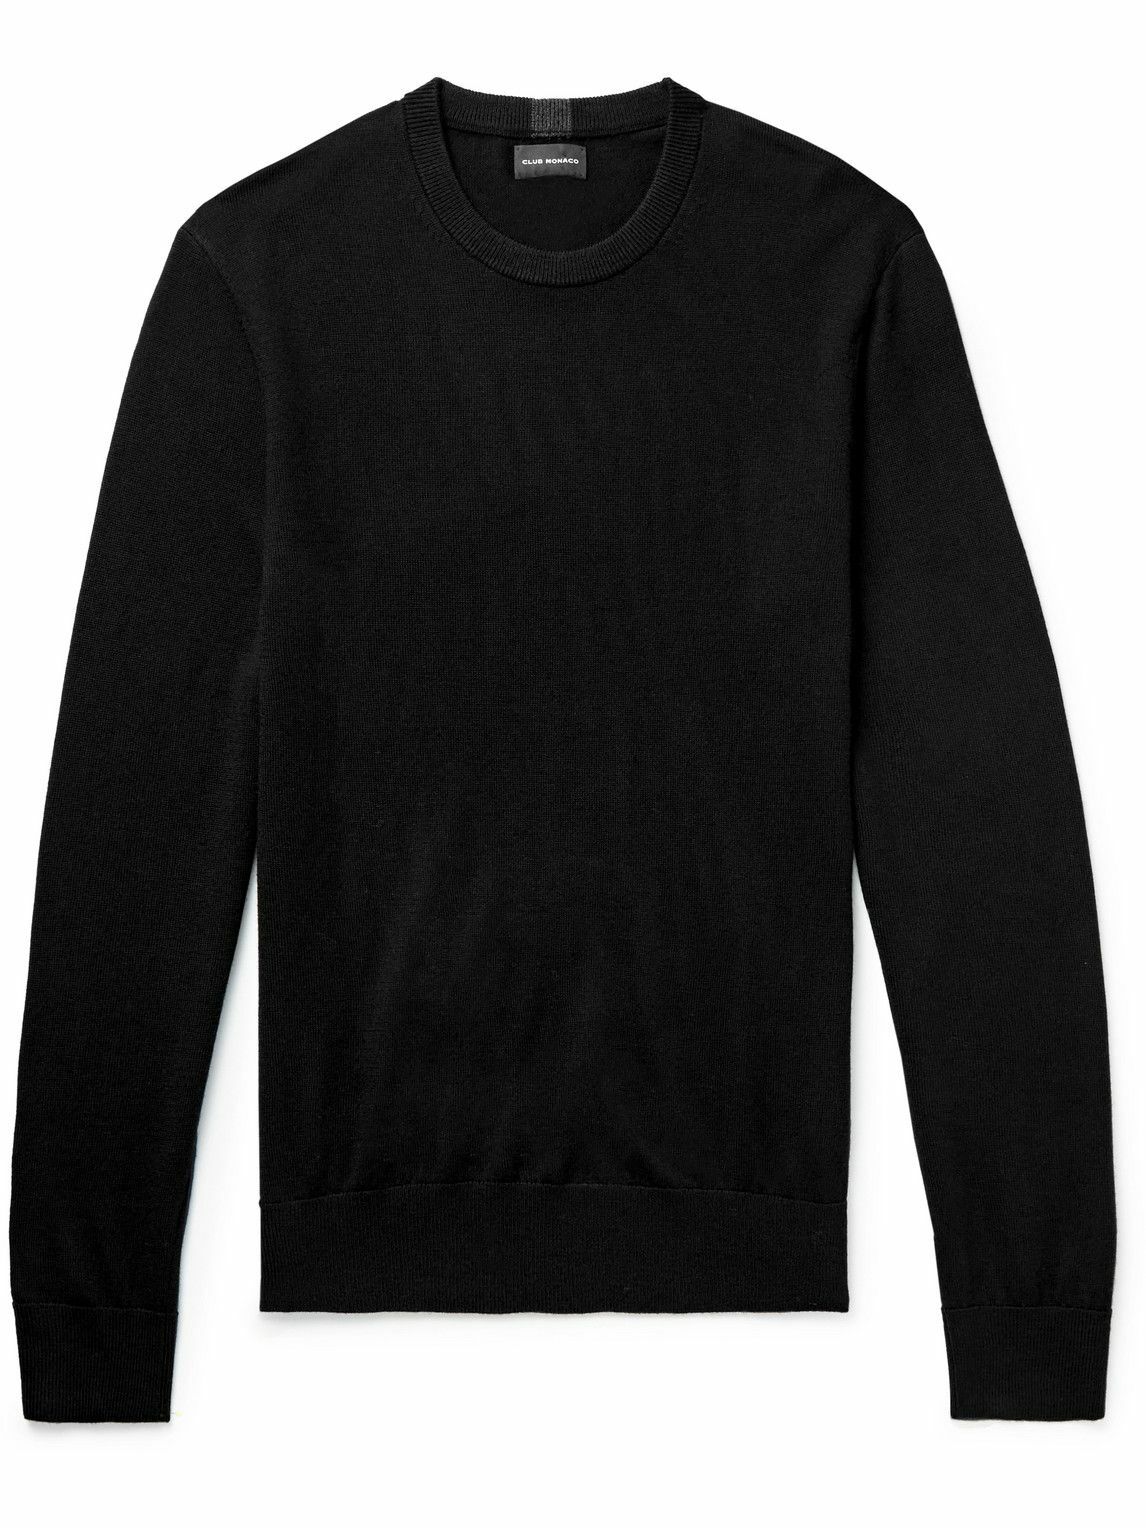 Club Monaco - Wool Sweater - Black Club Monaco